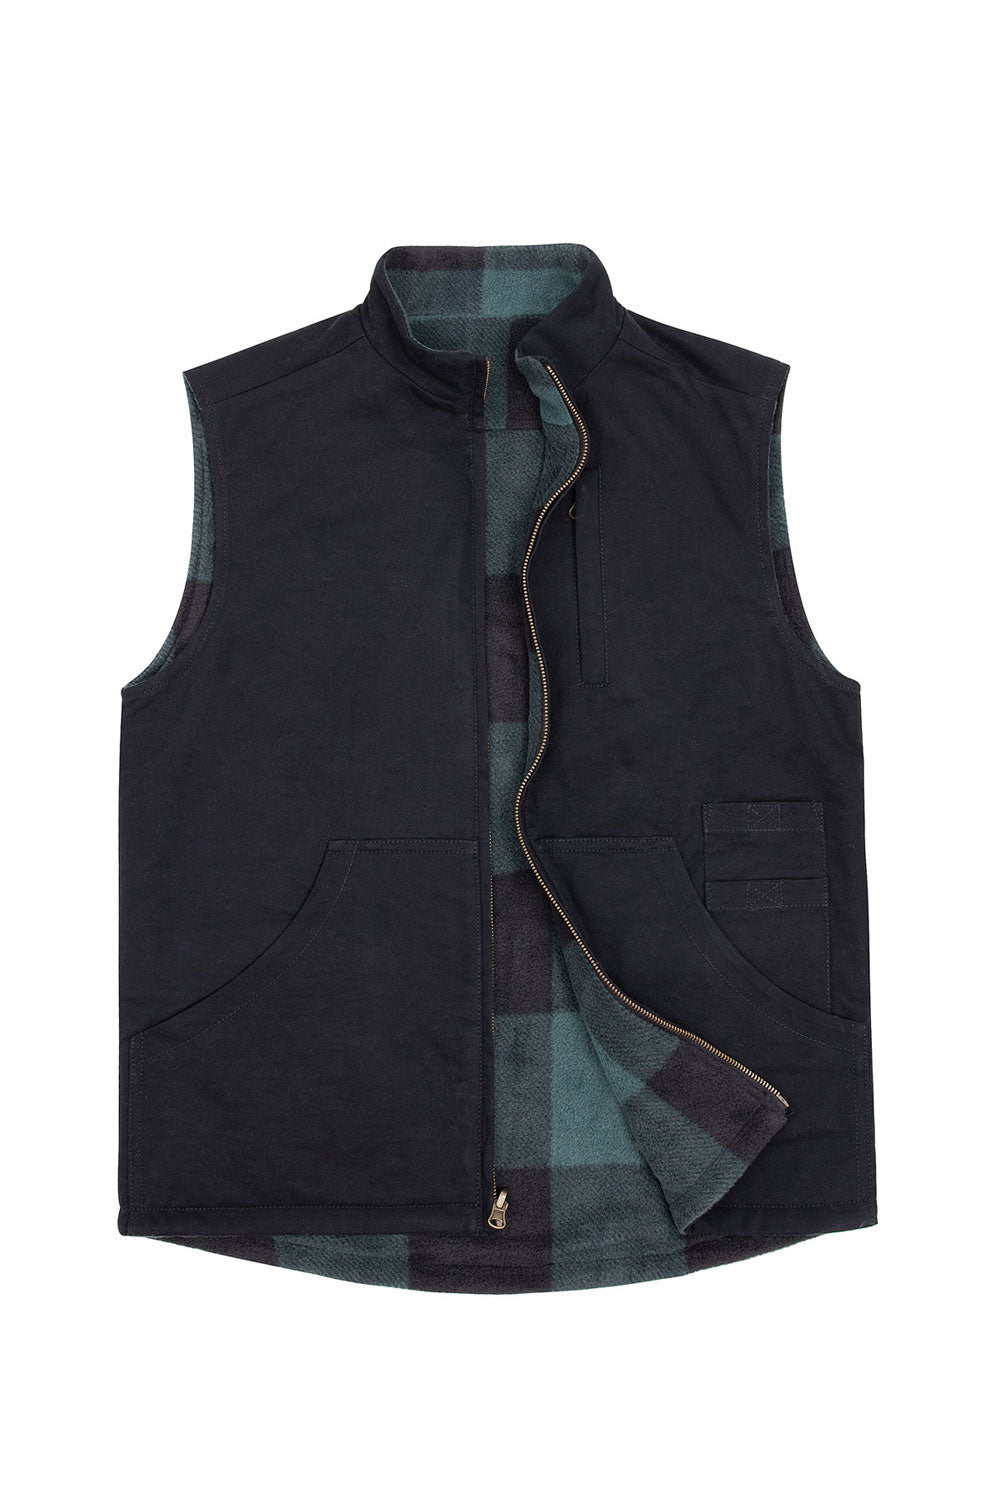 Men's Reversible Vest Plaid Fleece Lined Outdoor Work Travel Vests